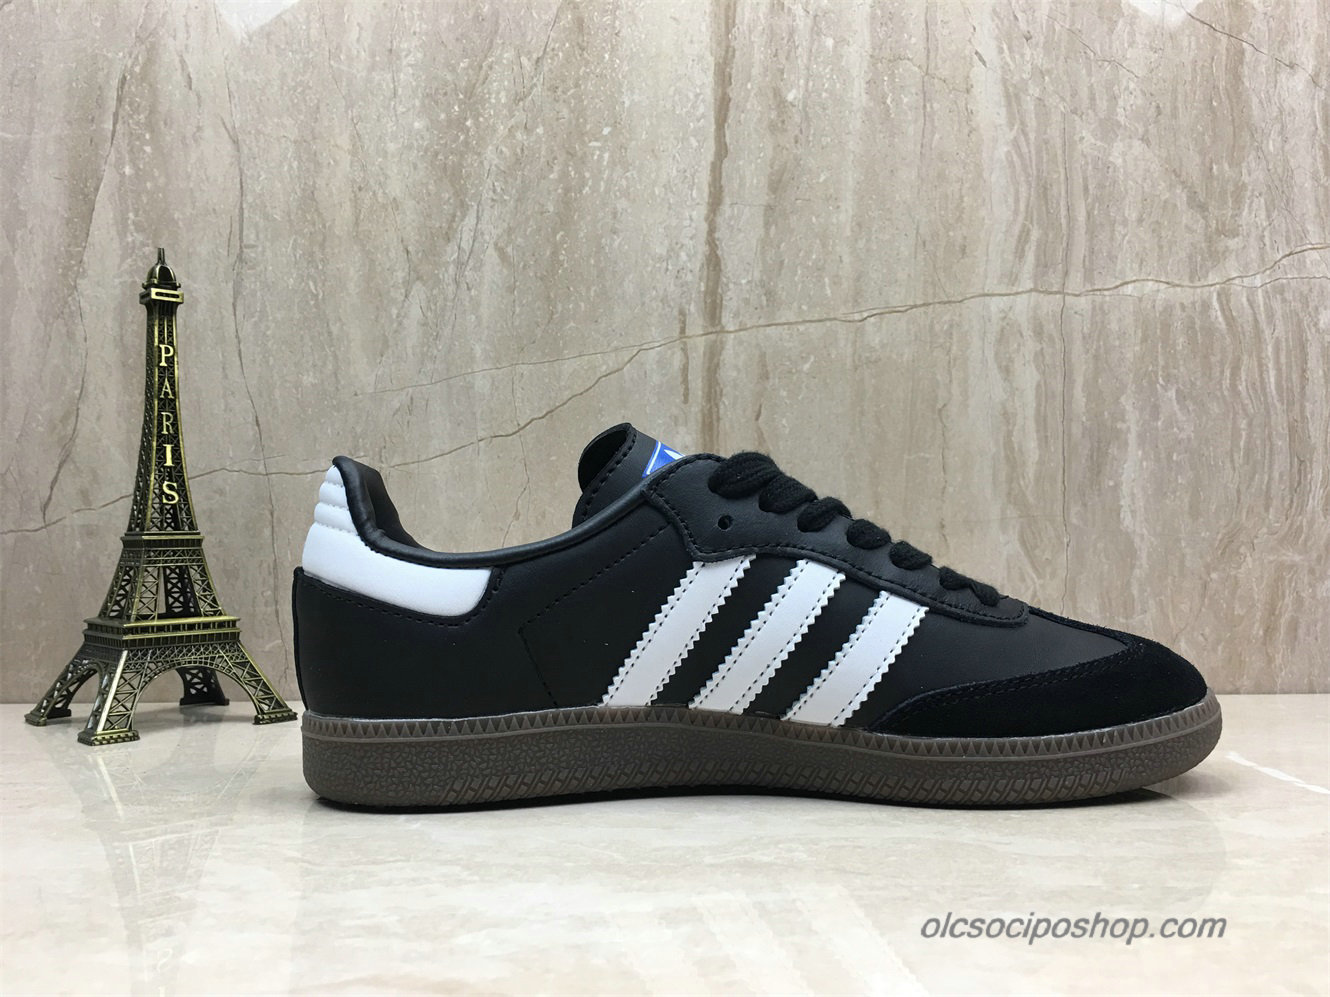 Adidas Samba OG Fekete/Fehér Cipők (B75807) - Kattintásra bezárul